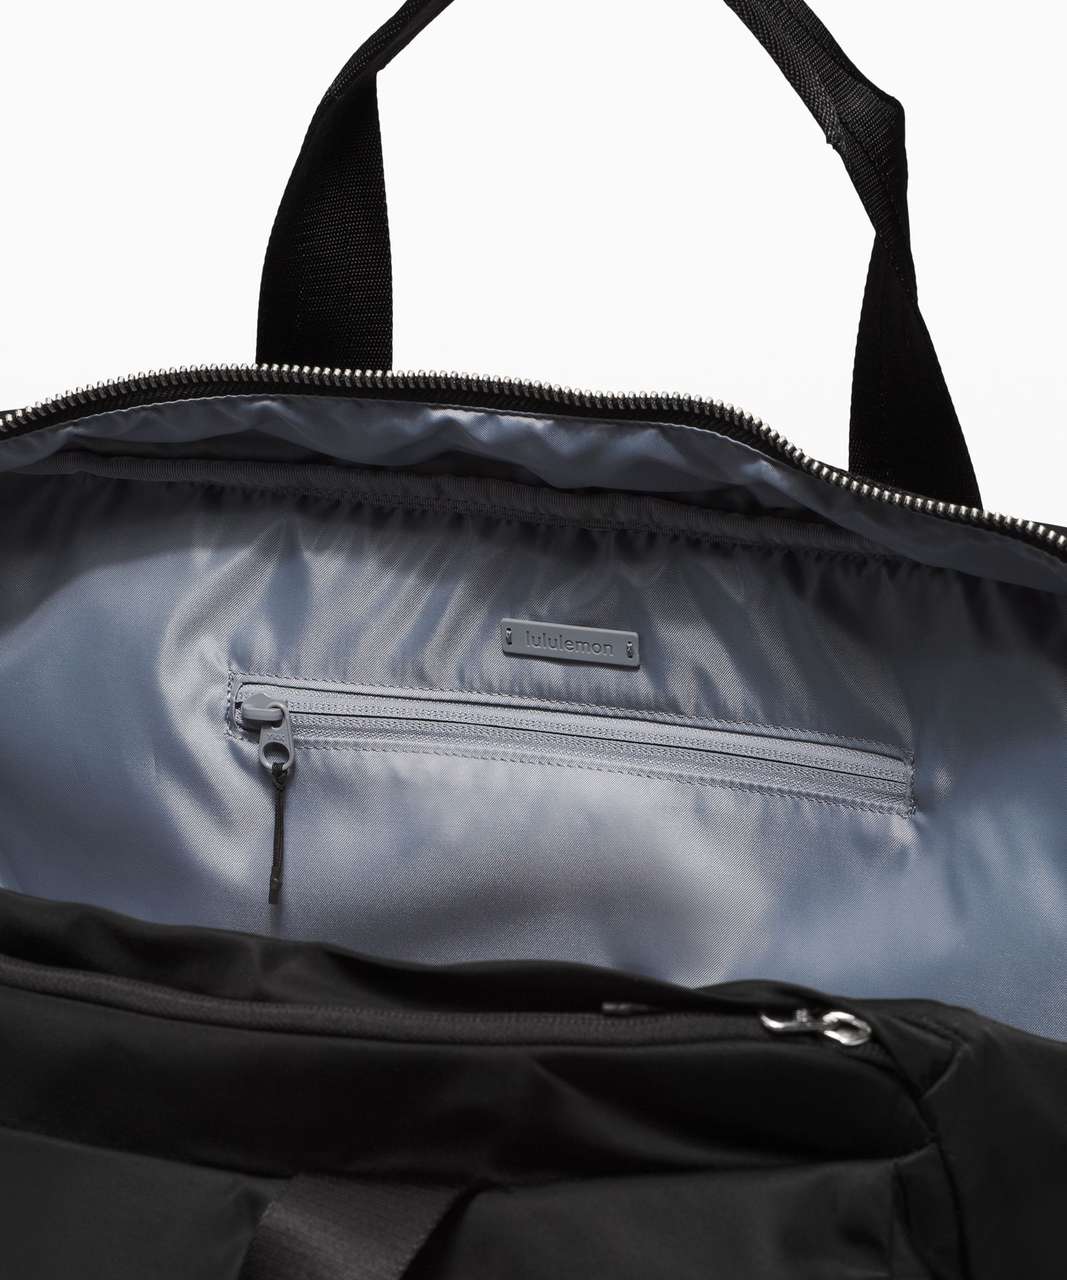 Lululemon Urban Nomad Large Duffle Bag 30L - Black / Rhino Grey